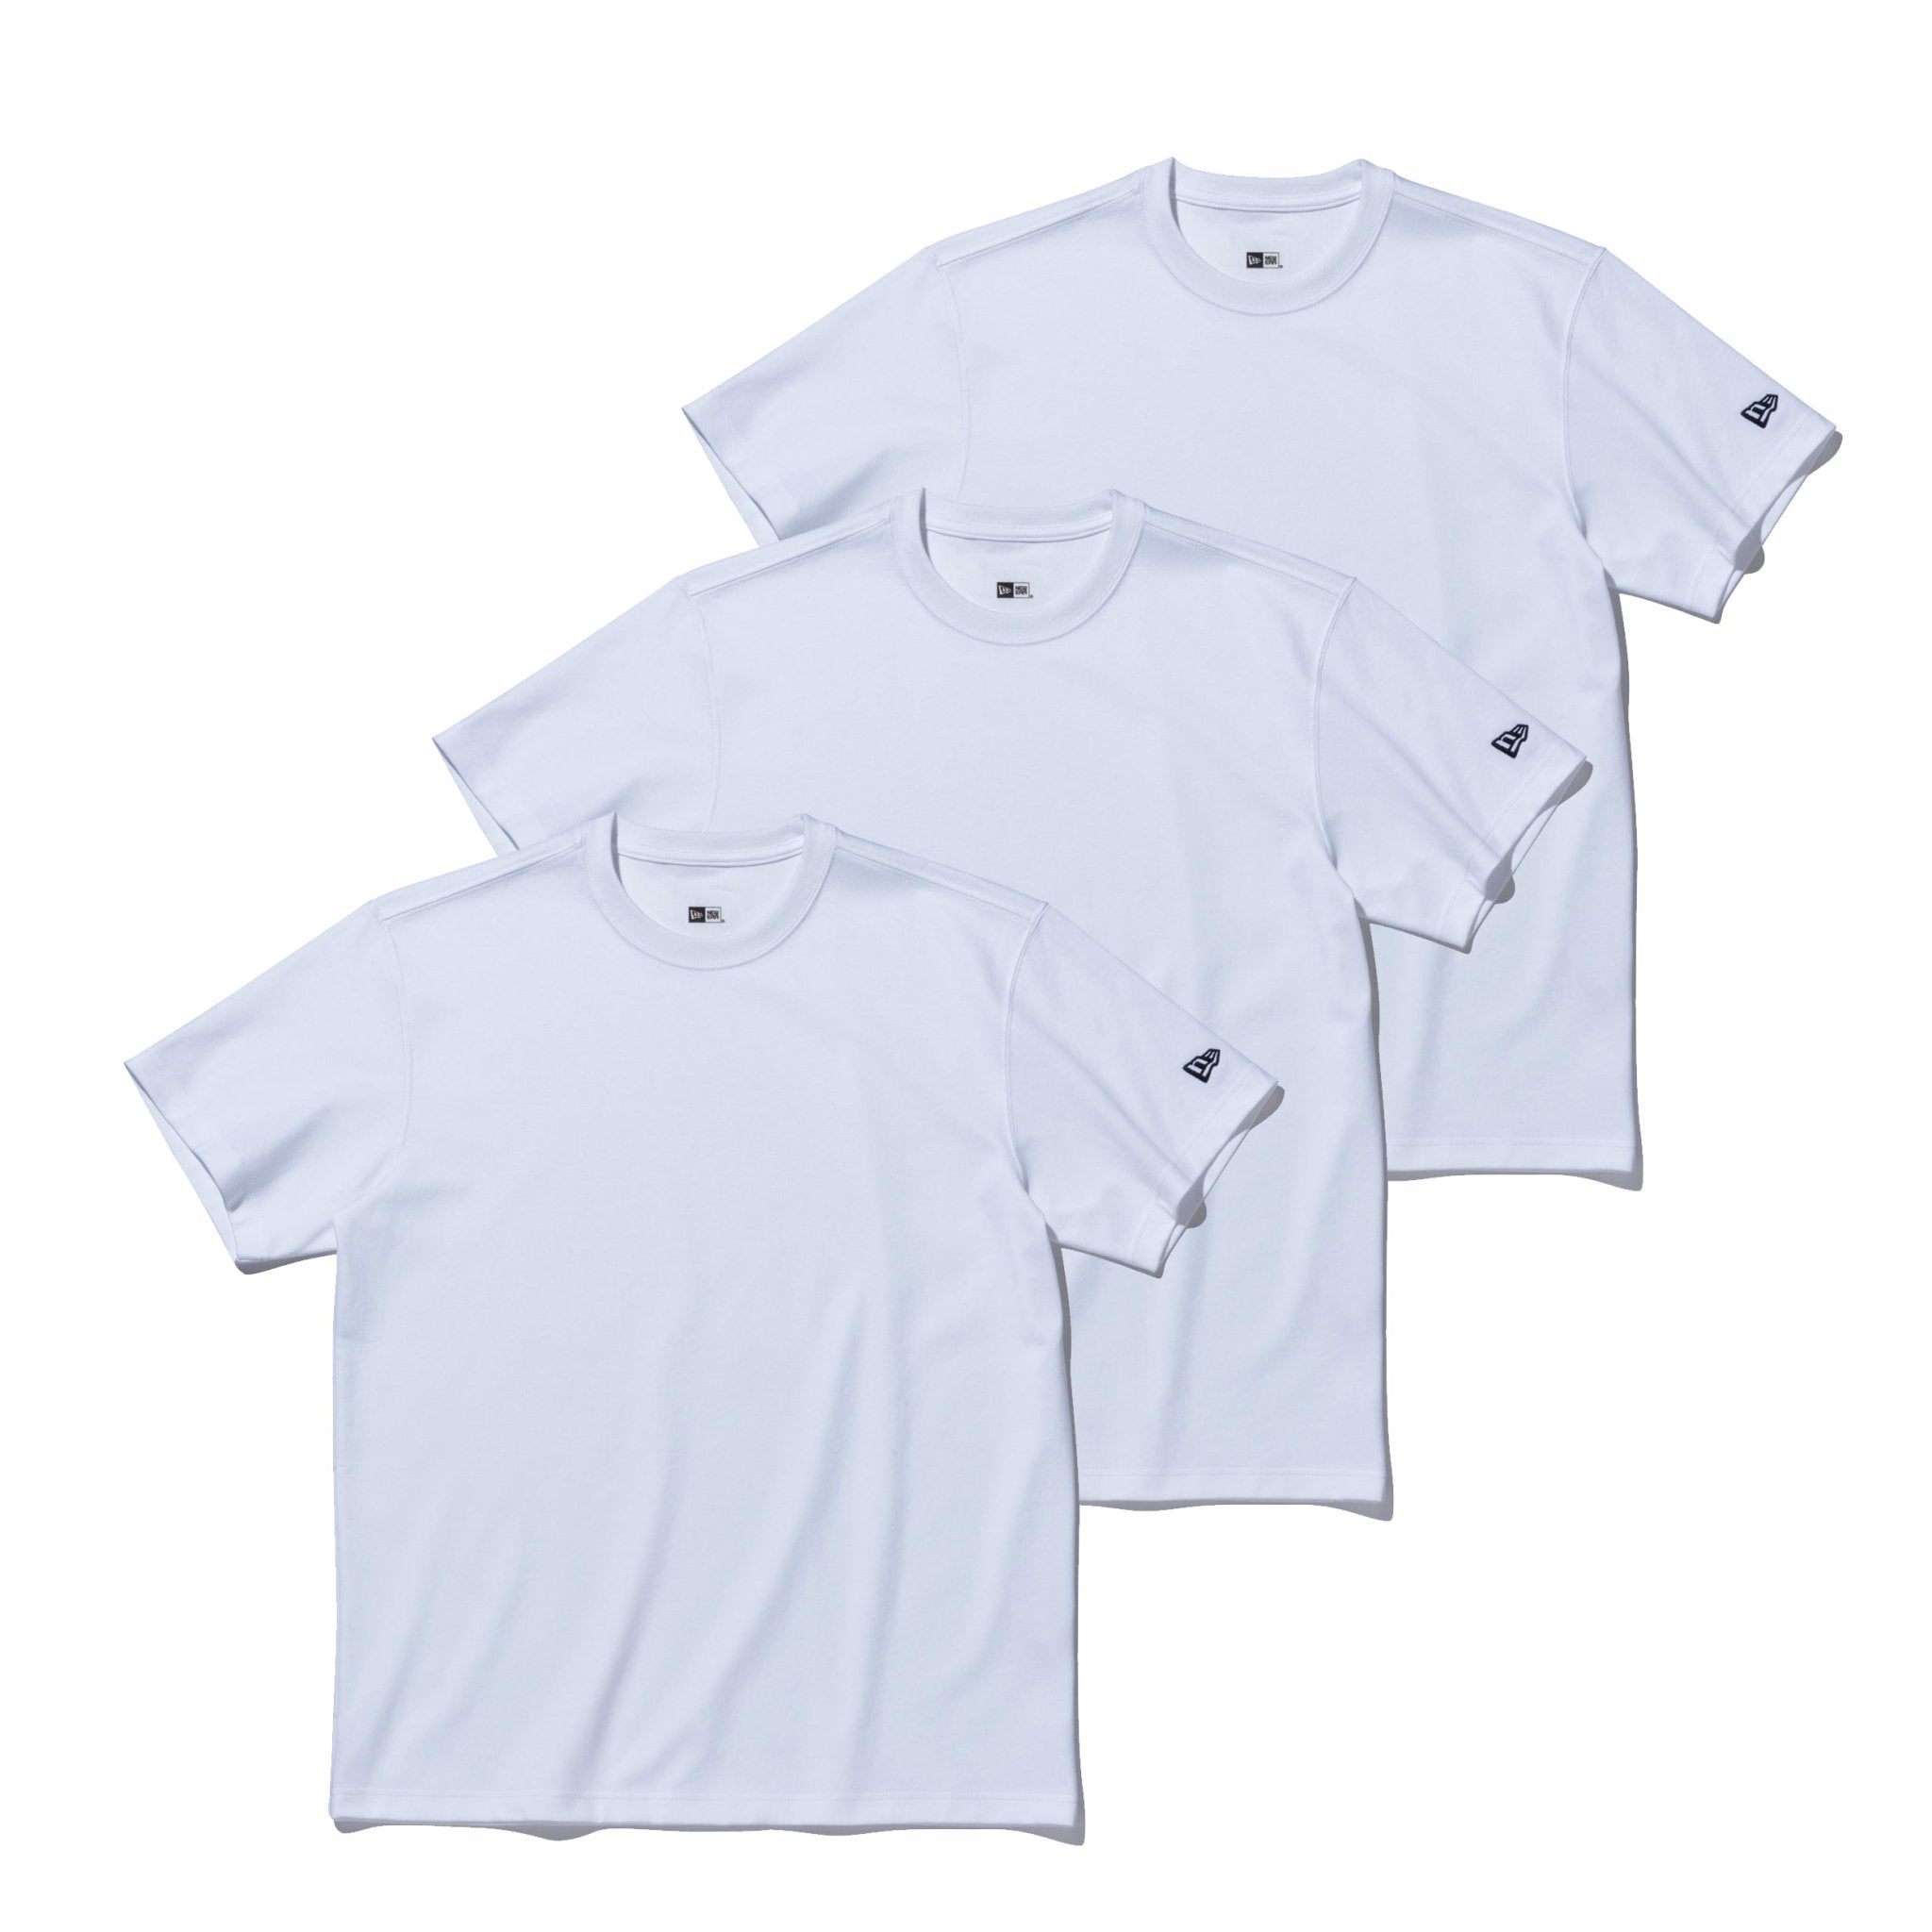 3-Pack 半袖 パフォーマンス Tシャツ ホワイト | ニューエラオンライン